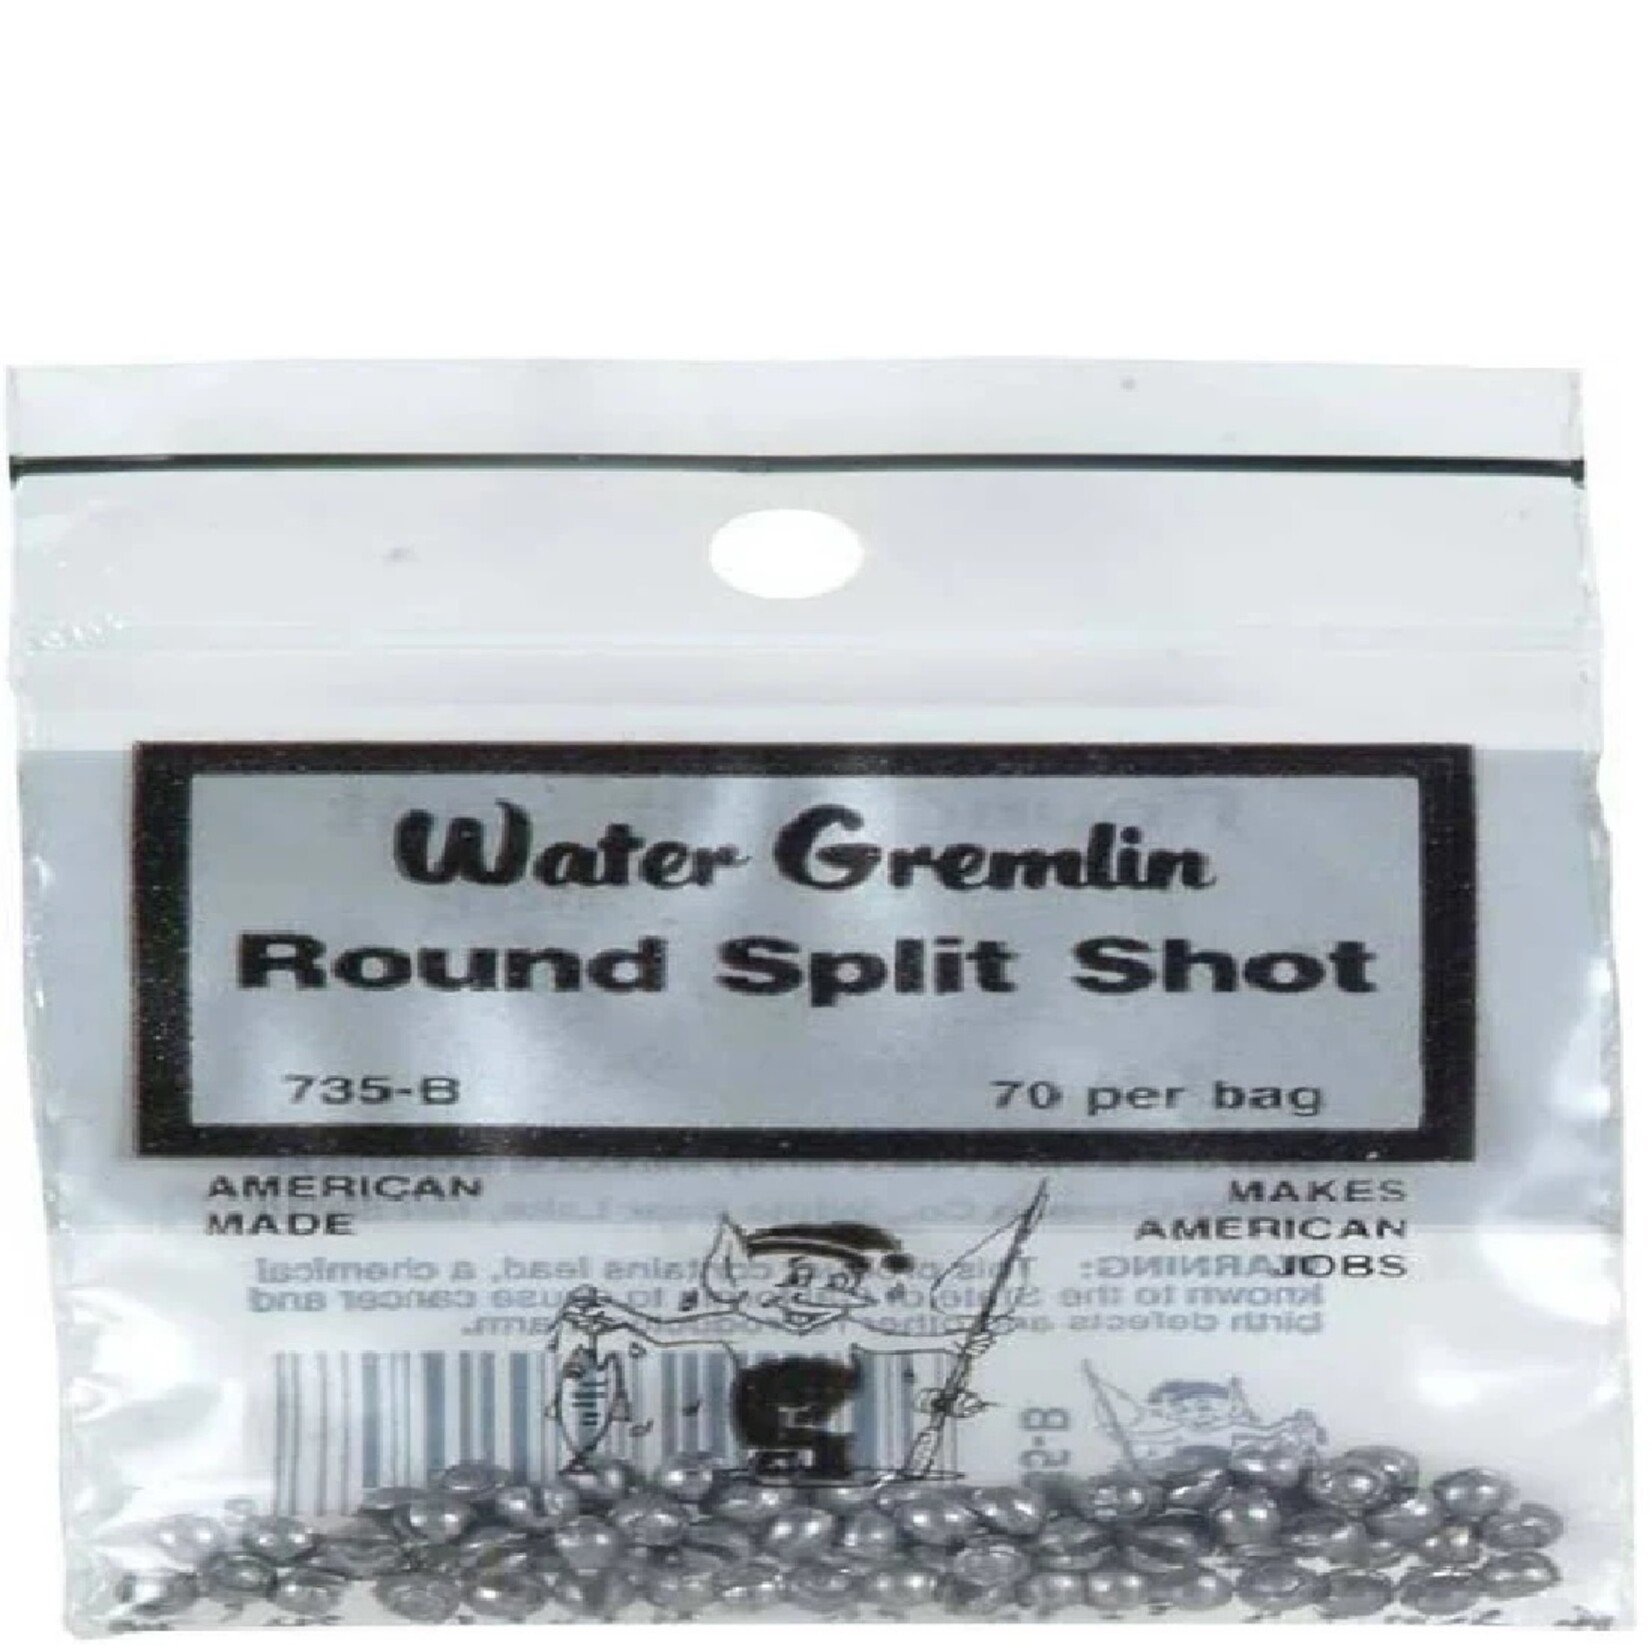 WATER GREMLIN CO. WATER GREMLIN ROUND SPLIT SHOT 735